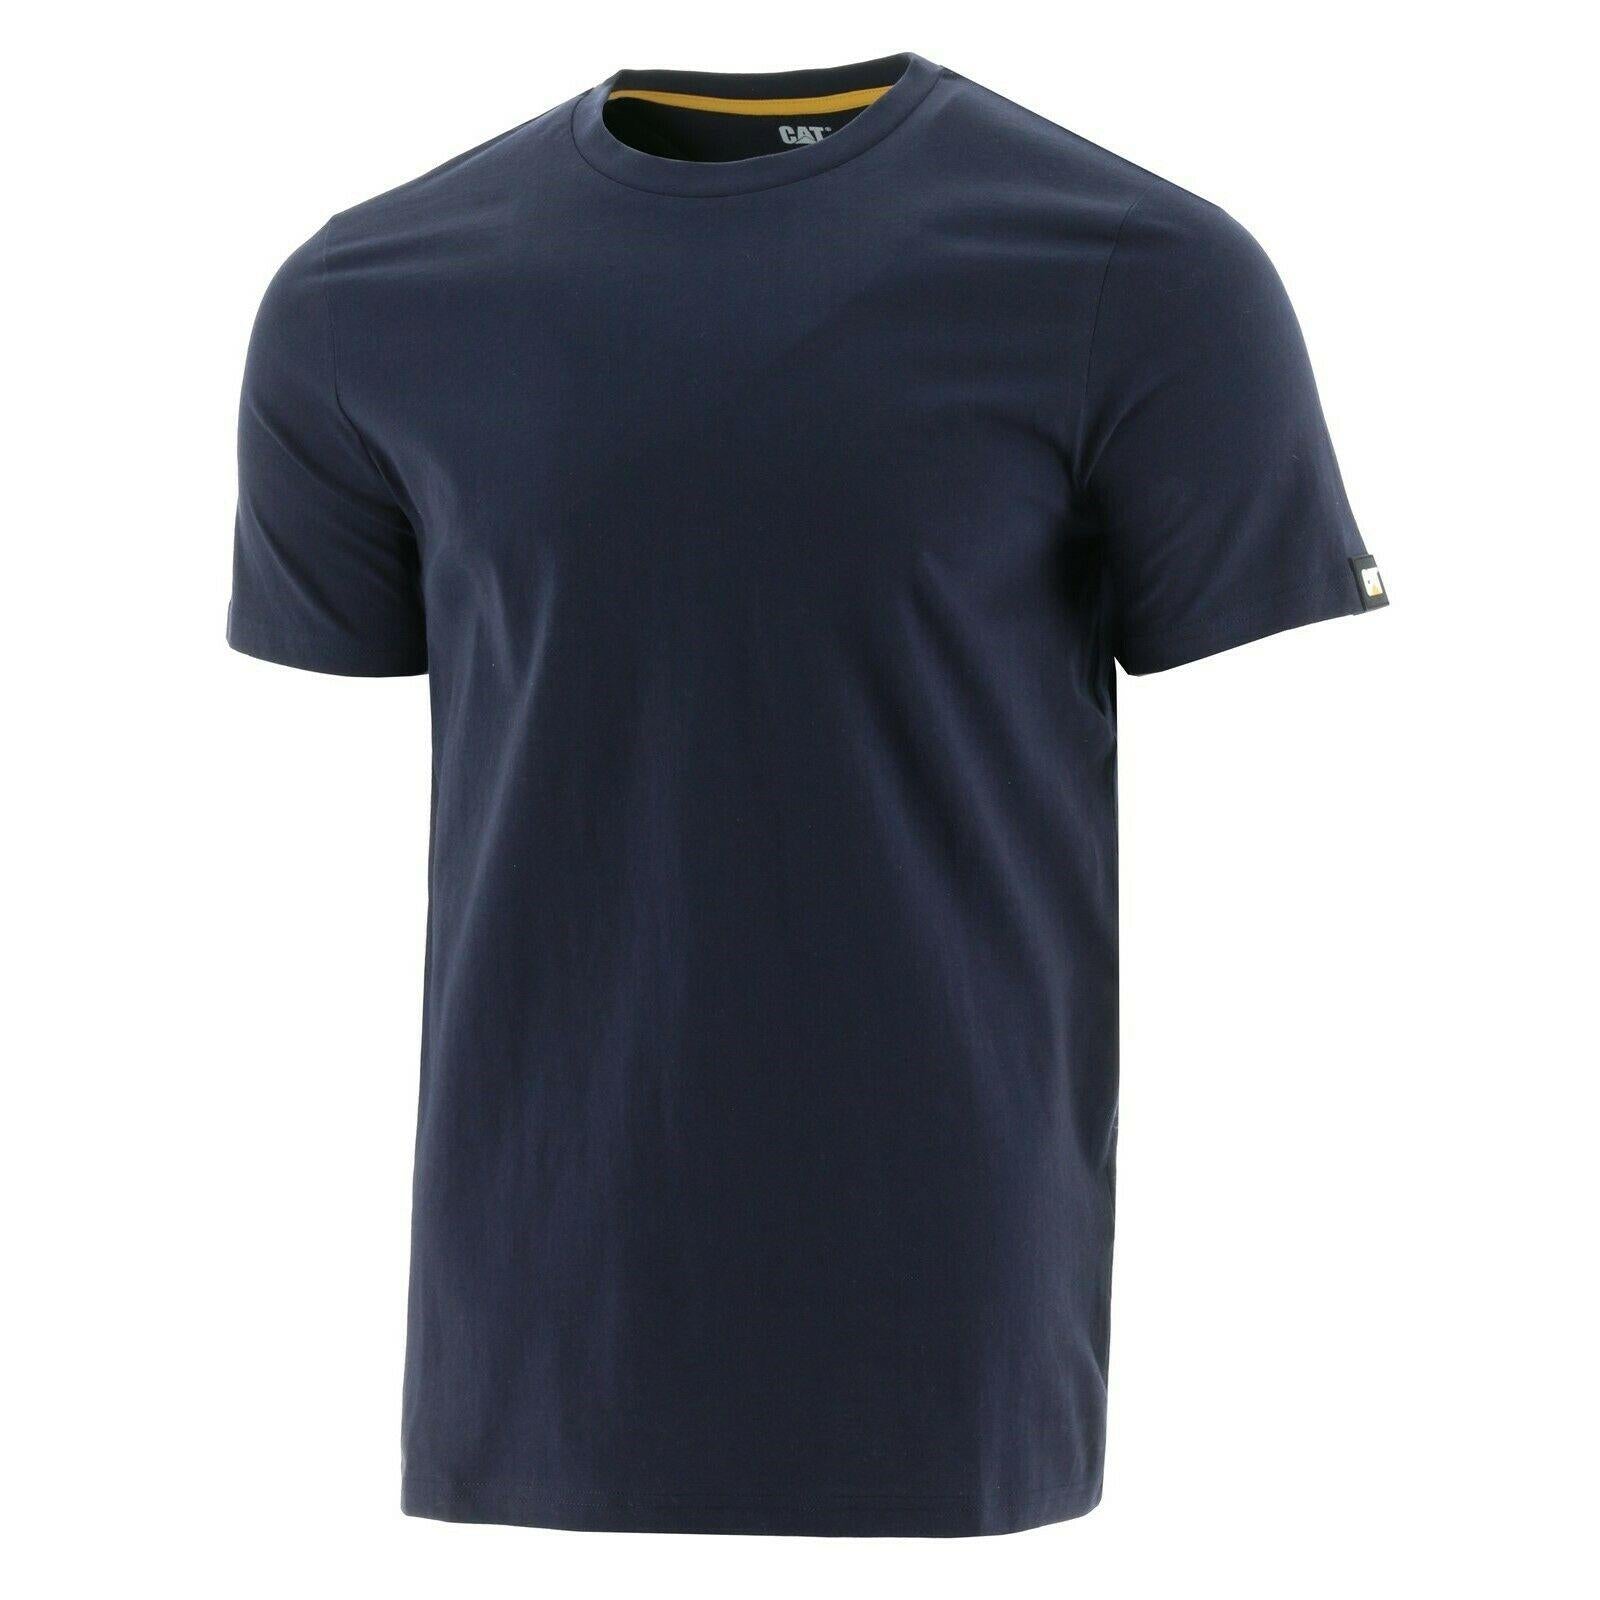 Caterpillar CAT Essentials Tee navy cotton short-sleeve T-shirt #1510590